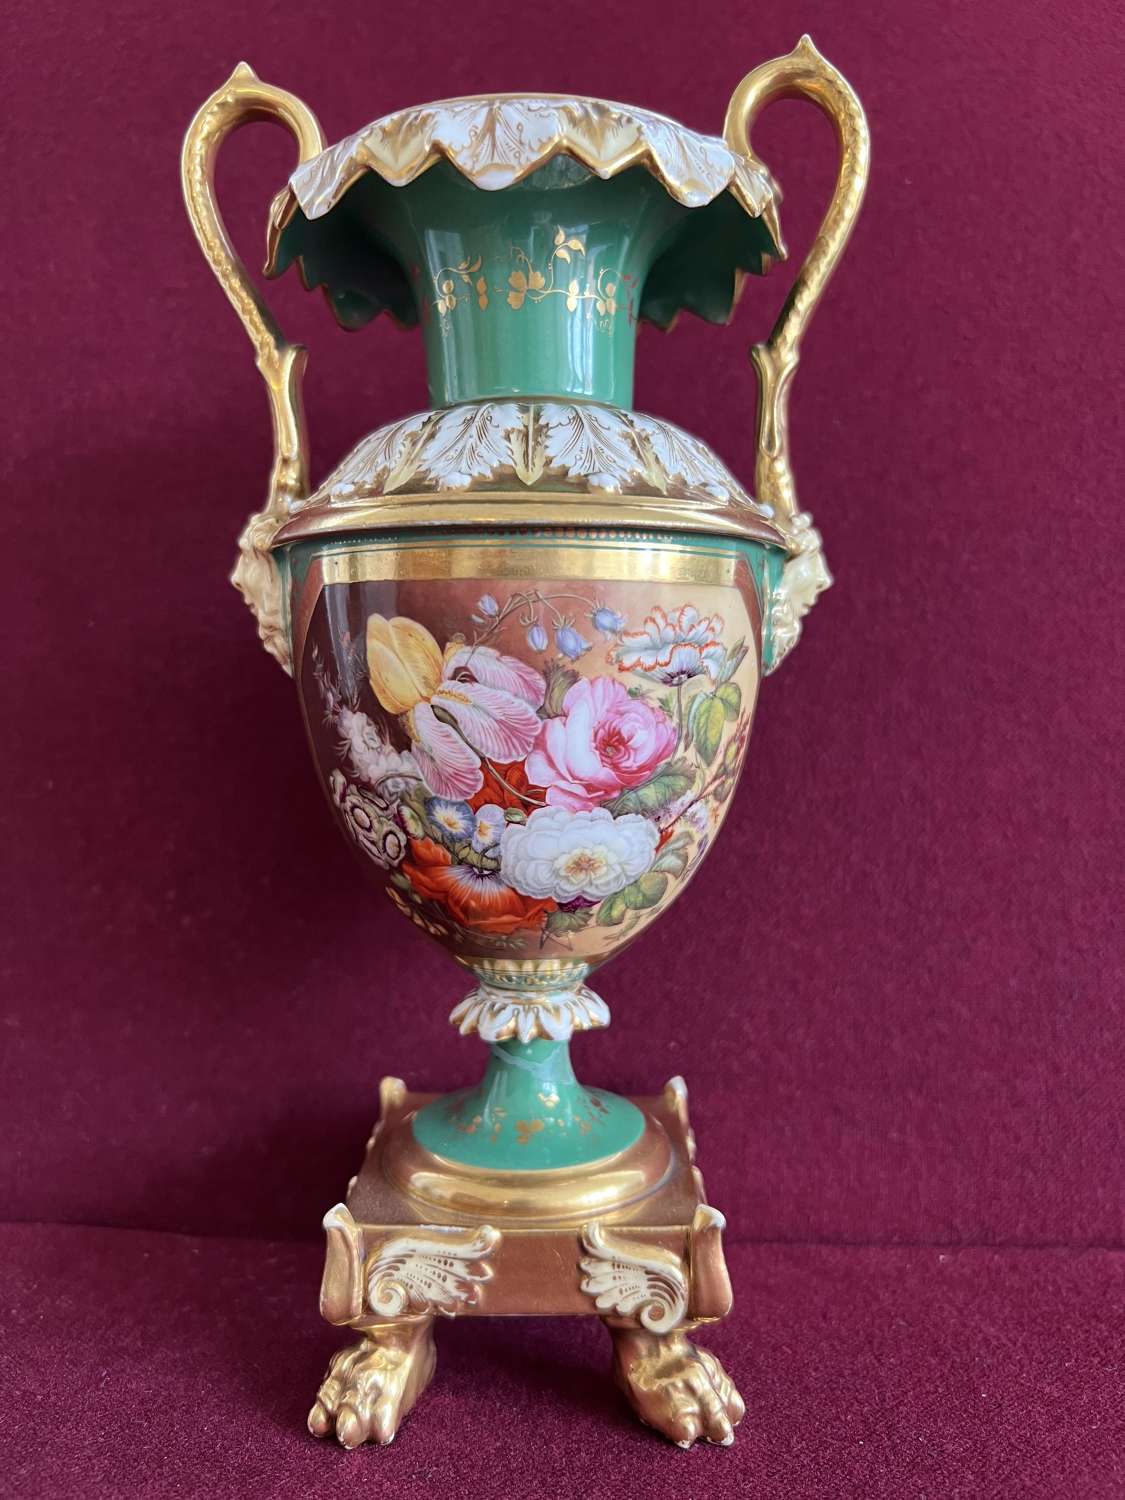 A Minton 'Rutland' shape porcelain vase c.1835-1840